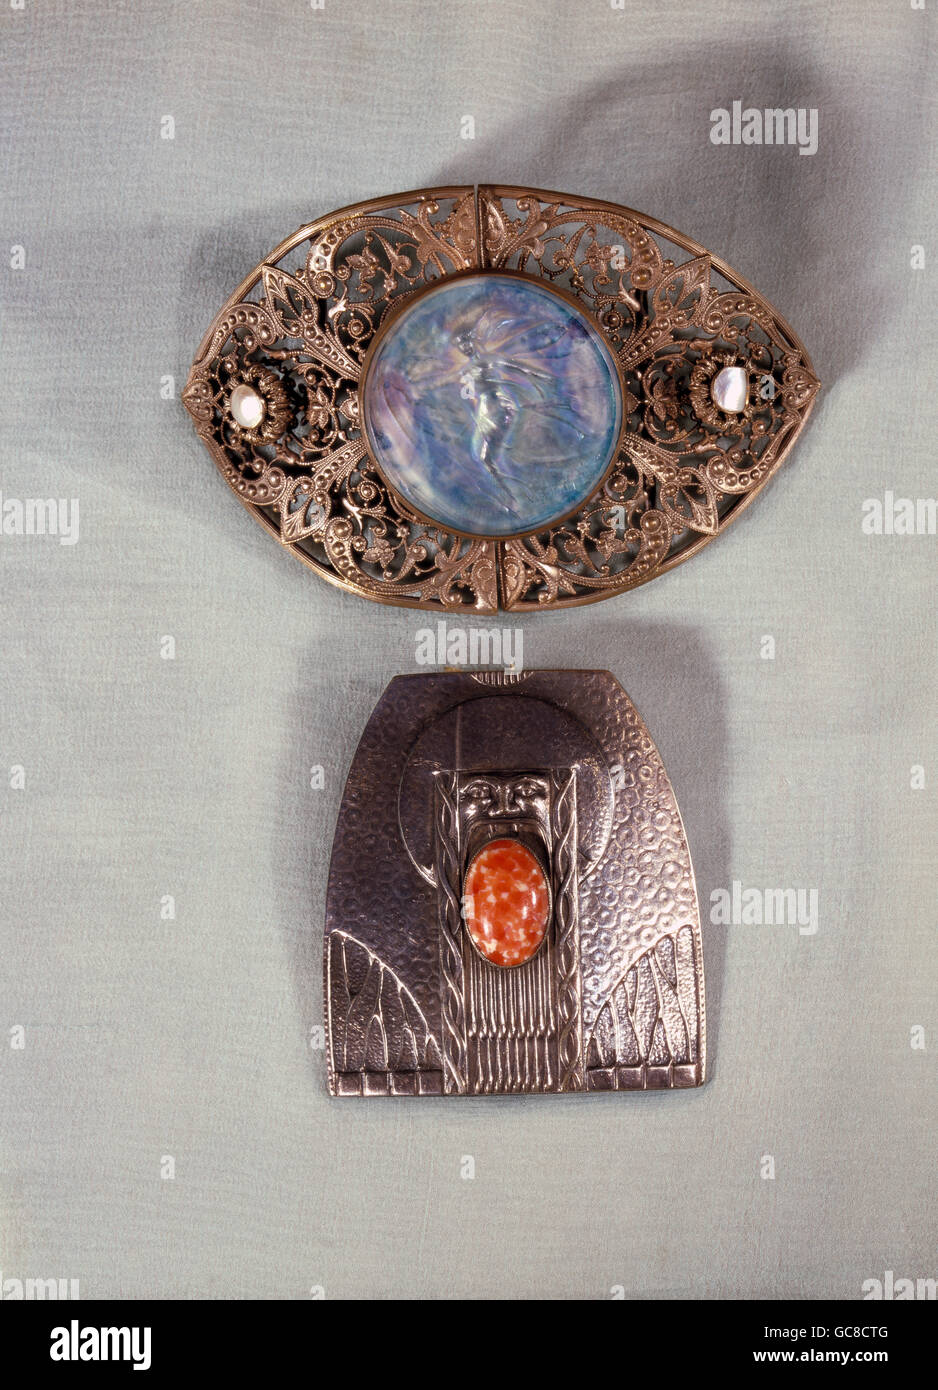 Gioielli, due fibbie a cintura, sopra: Di Georg Stana, argento, nacre,  vetro, 7.6 cm x 12 cm, circa 1900, sotto: Olbrich (1867 - 1908), metallo  bianco, sbattuto, pietra agata, altezza 7.2 cm,